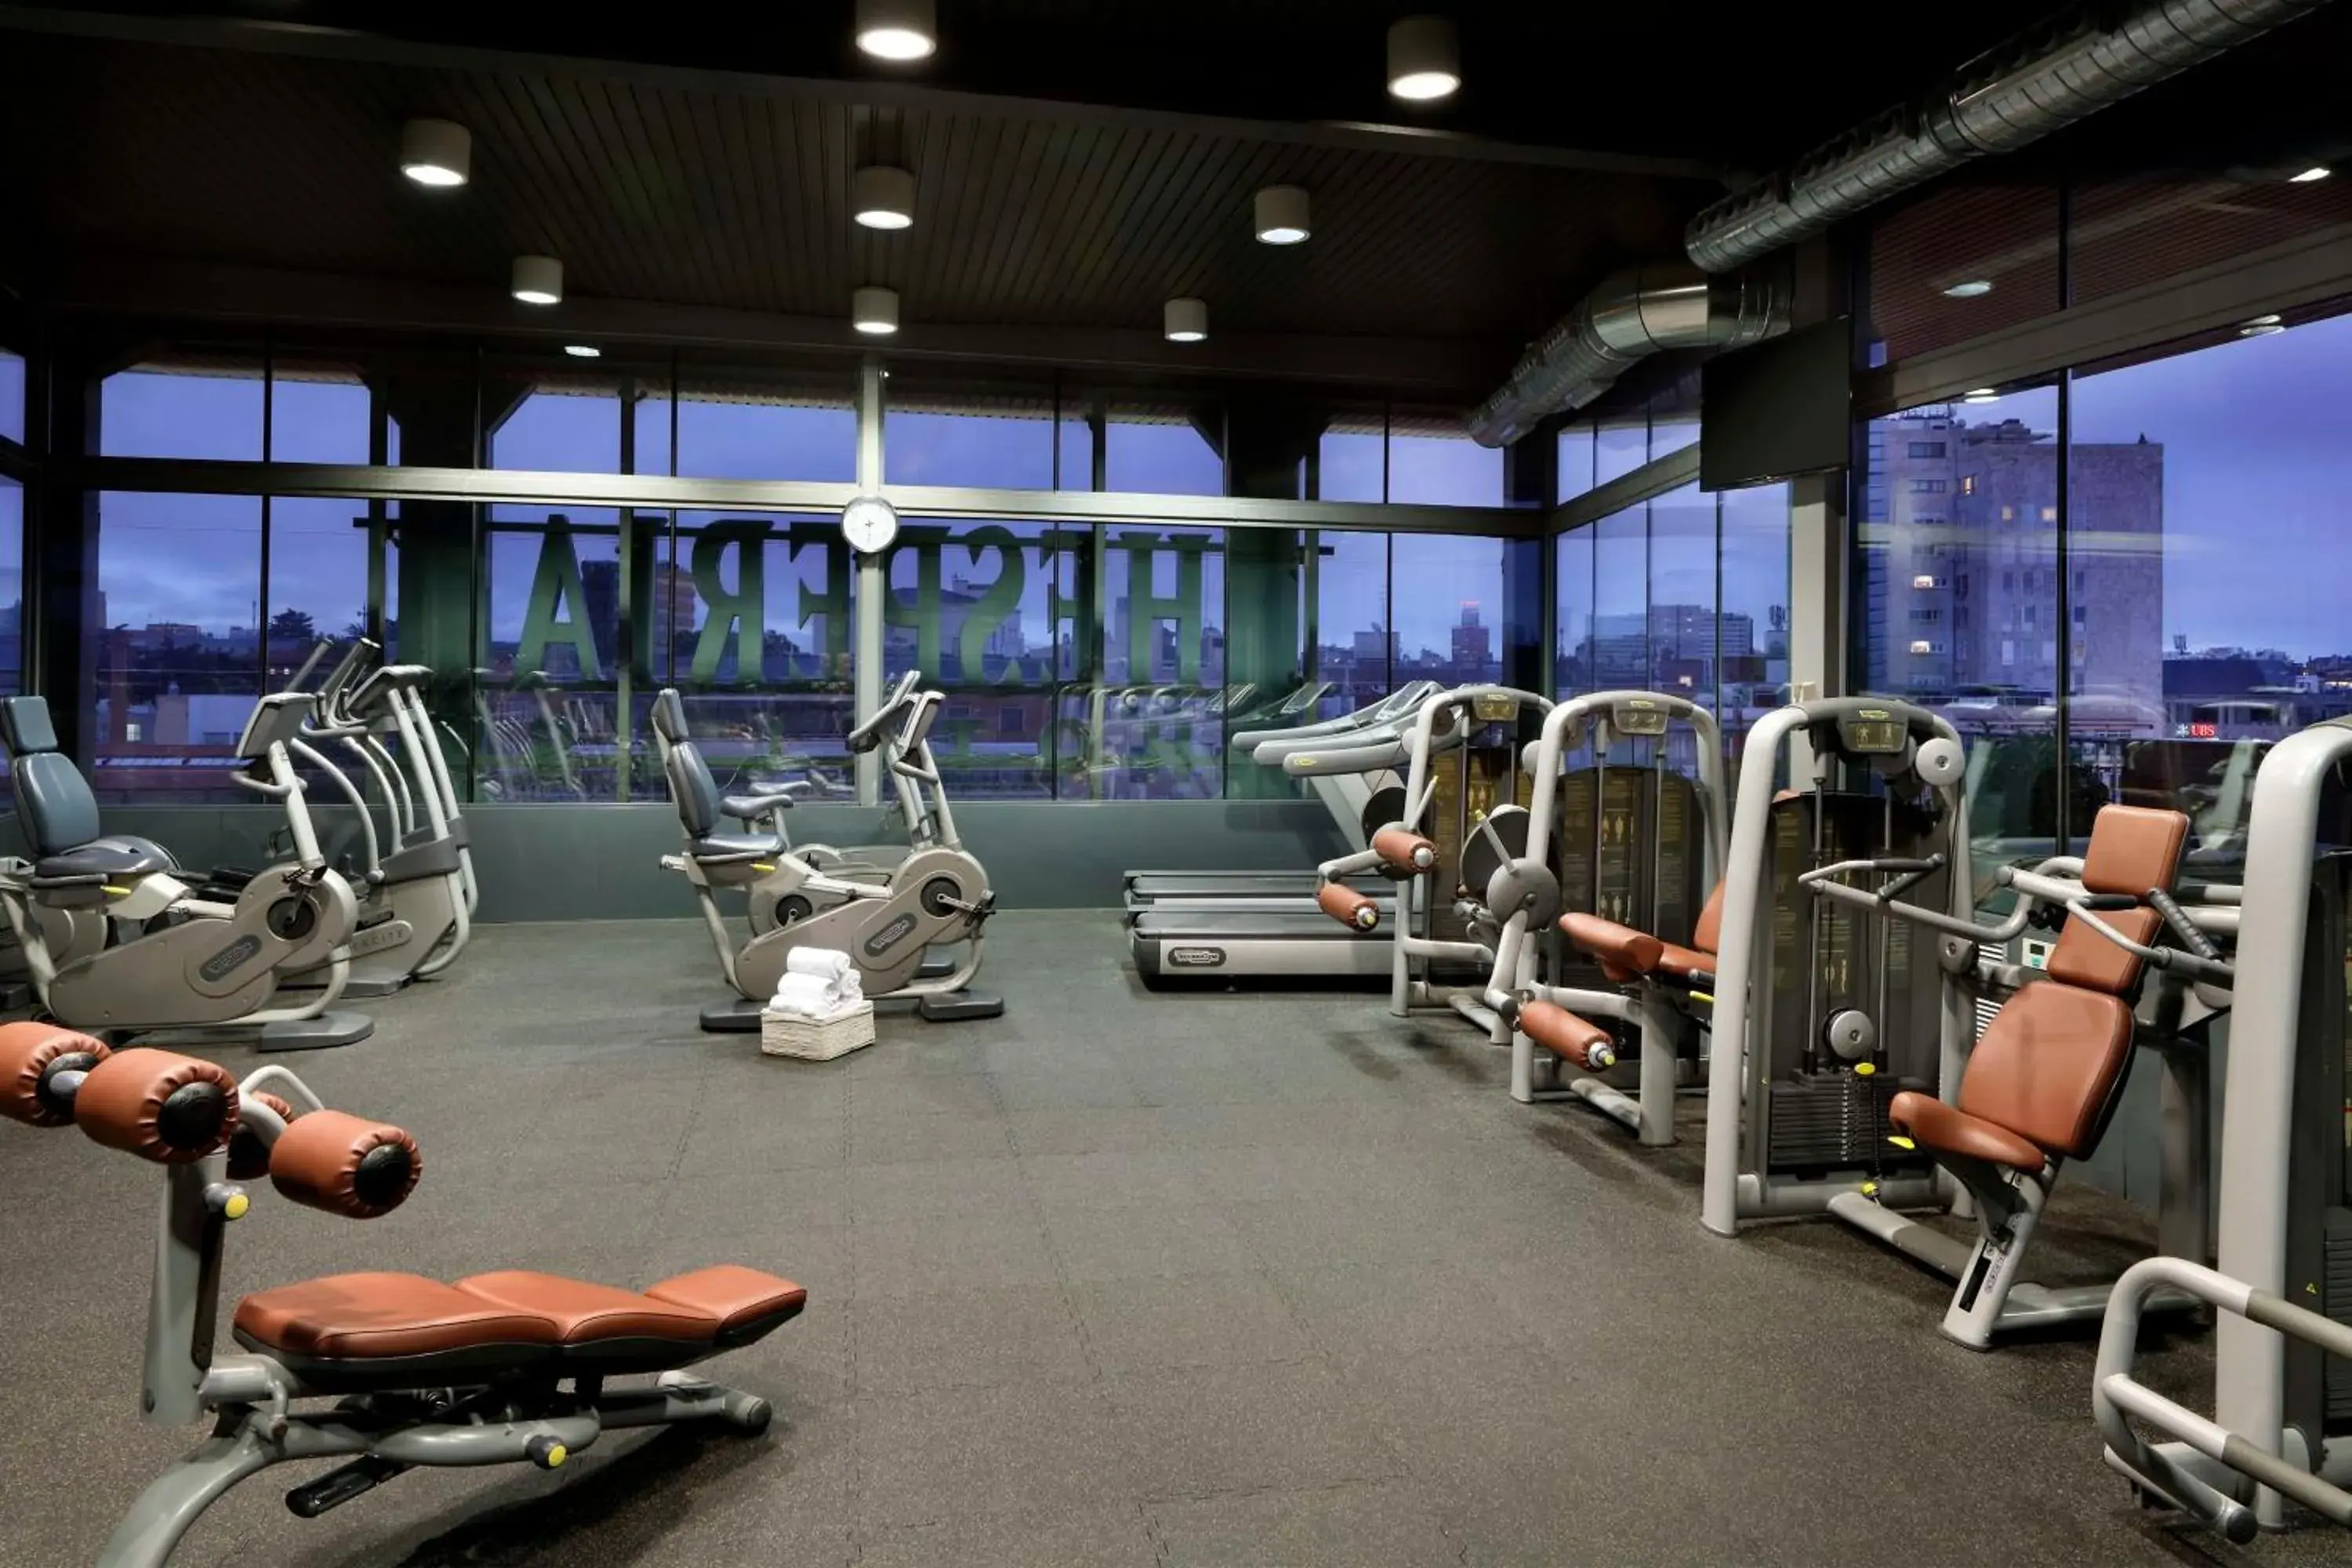 Fitness centre/facilities, Fitness Center/Facilities in Hyatt Regency Hesperia Madrid